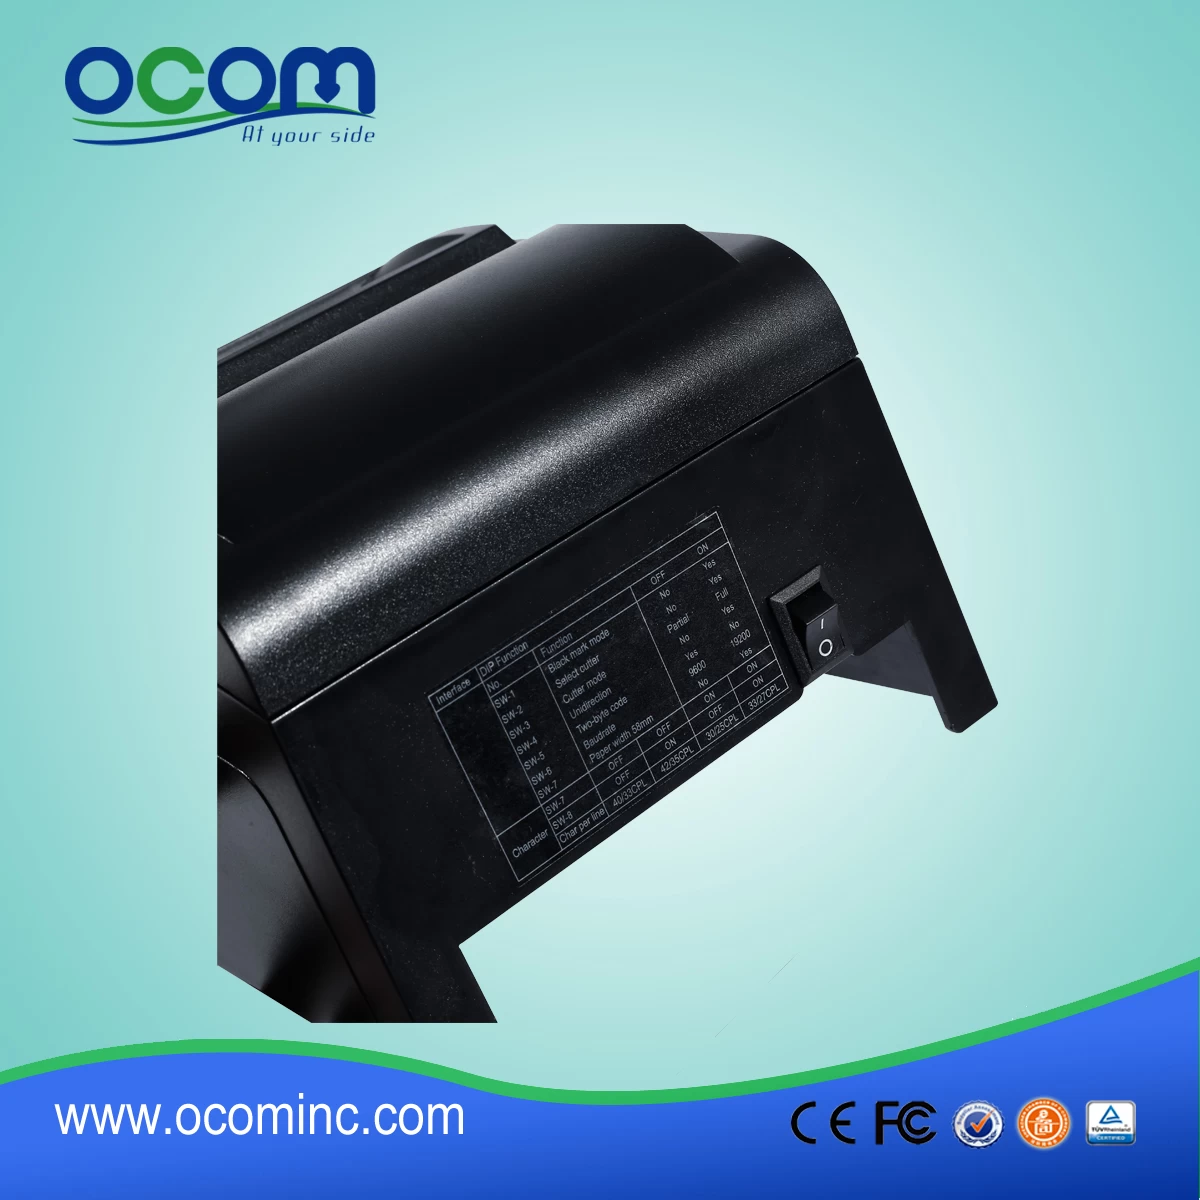 Ocpp-762 76mm Mobile DOT Matrix Receipt Printer for Lottery